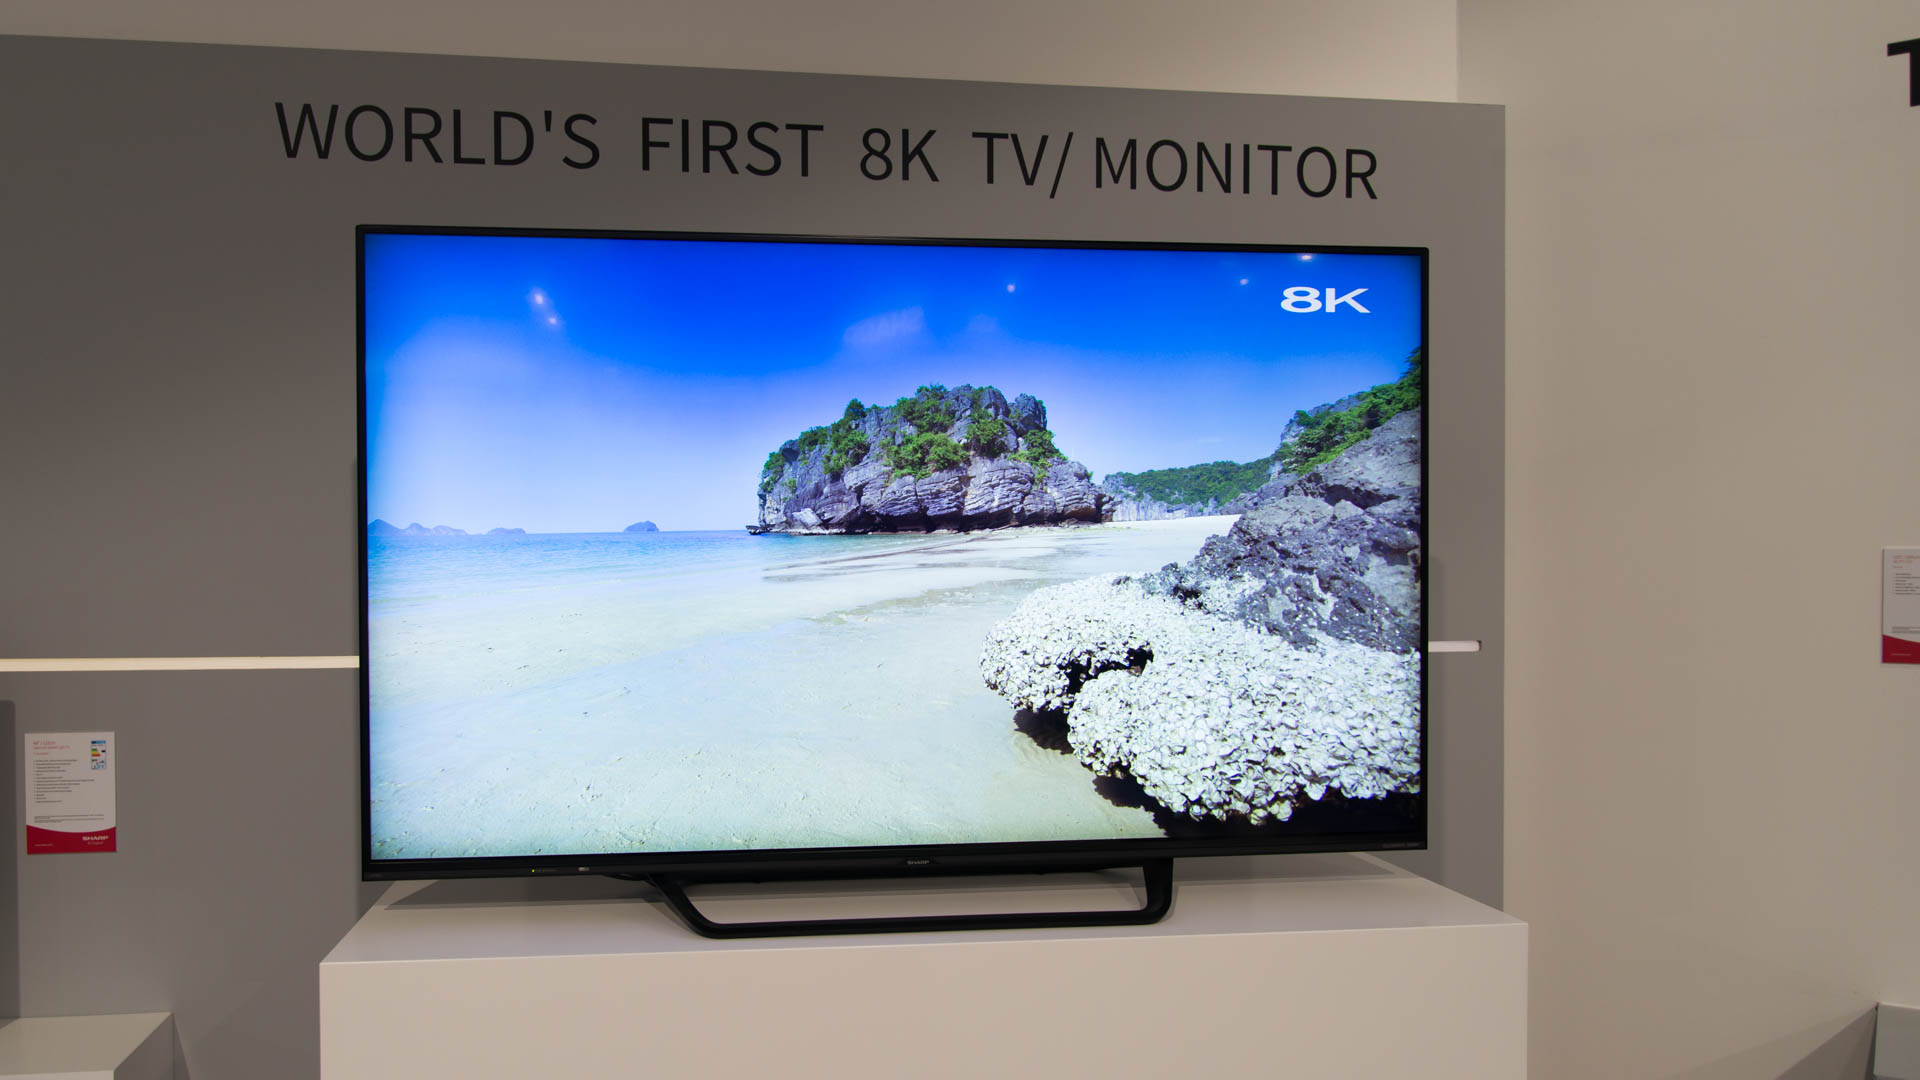 اولین پخش تلویزیونی با کیفیت 8K در ژاپن شروع شد!